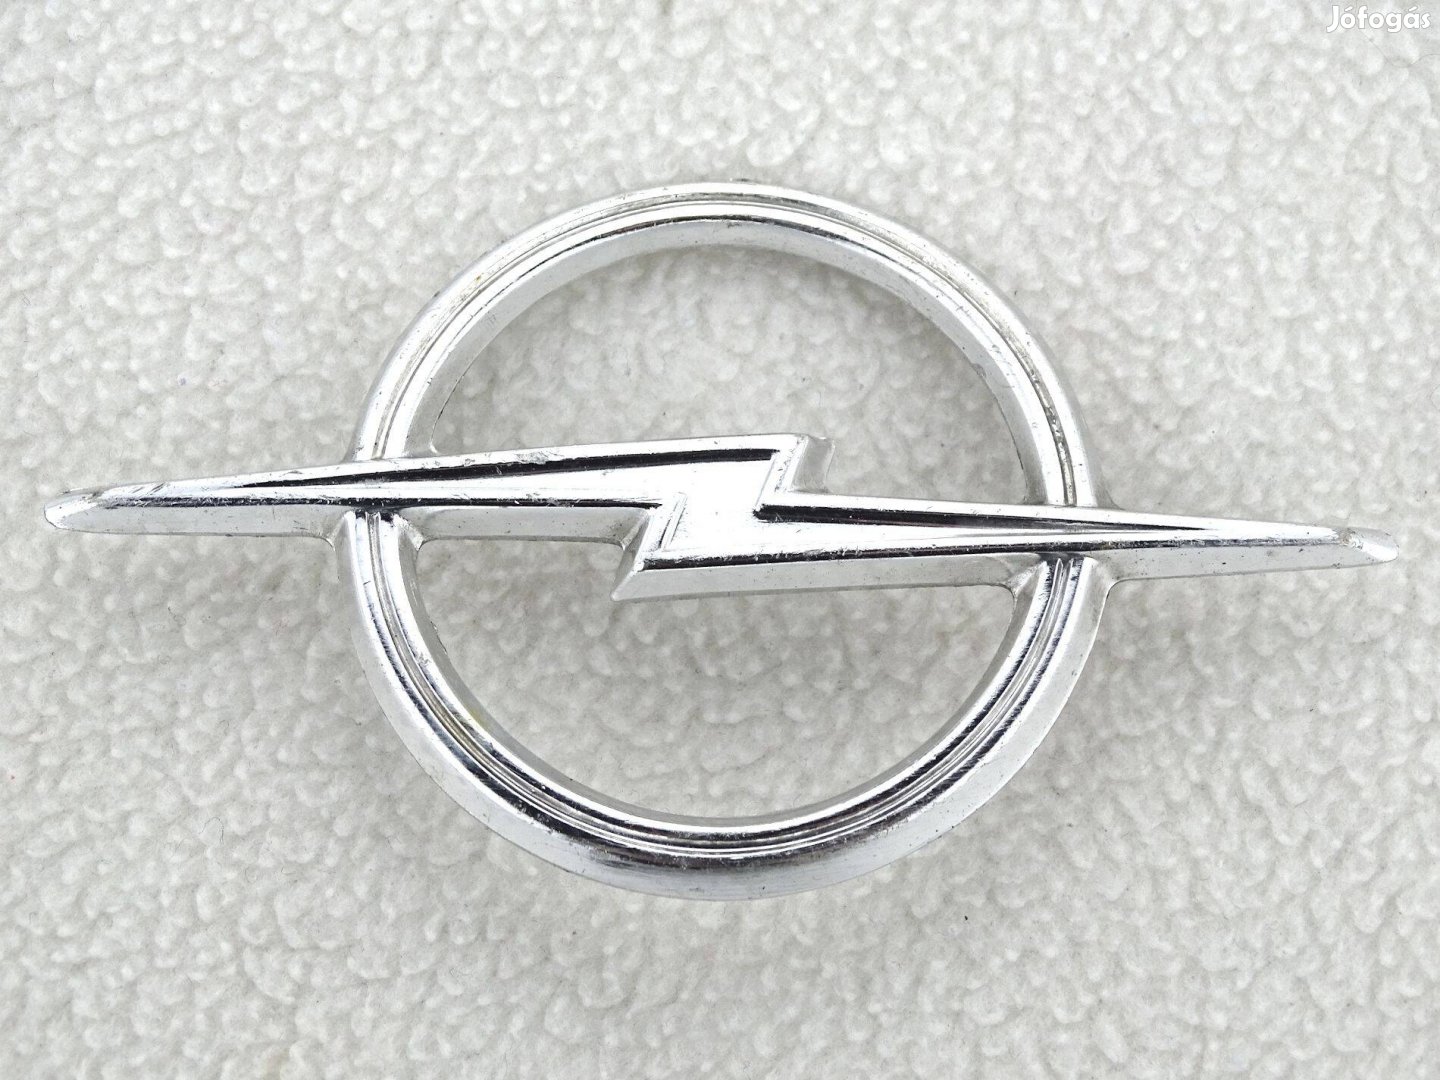 Veterán Opel Kadett Rekord Commodore 60mm embléma